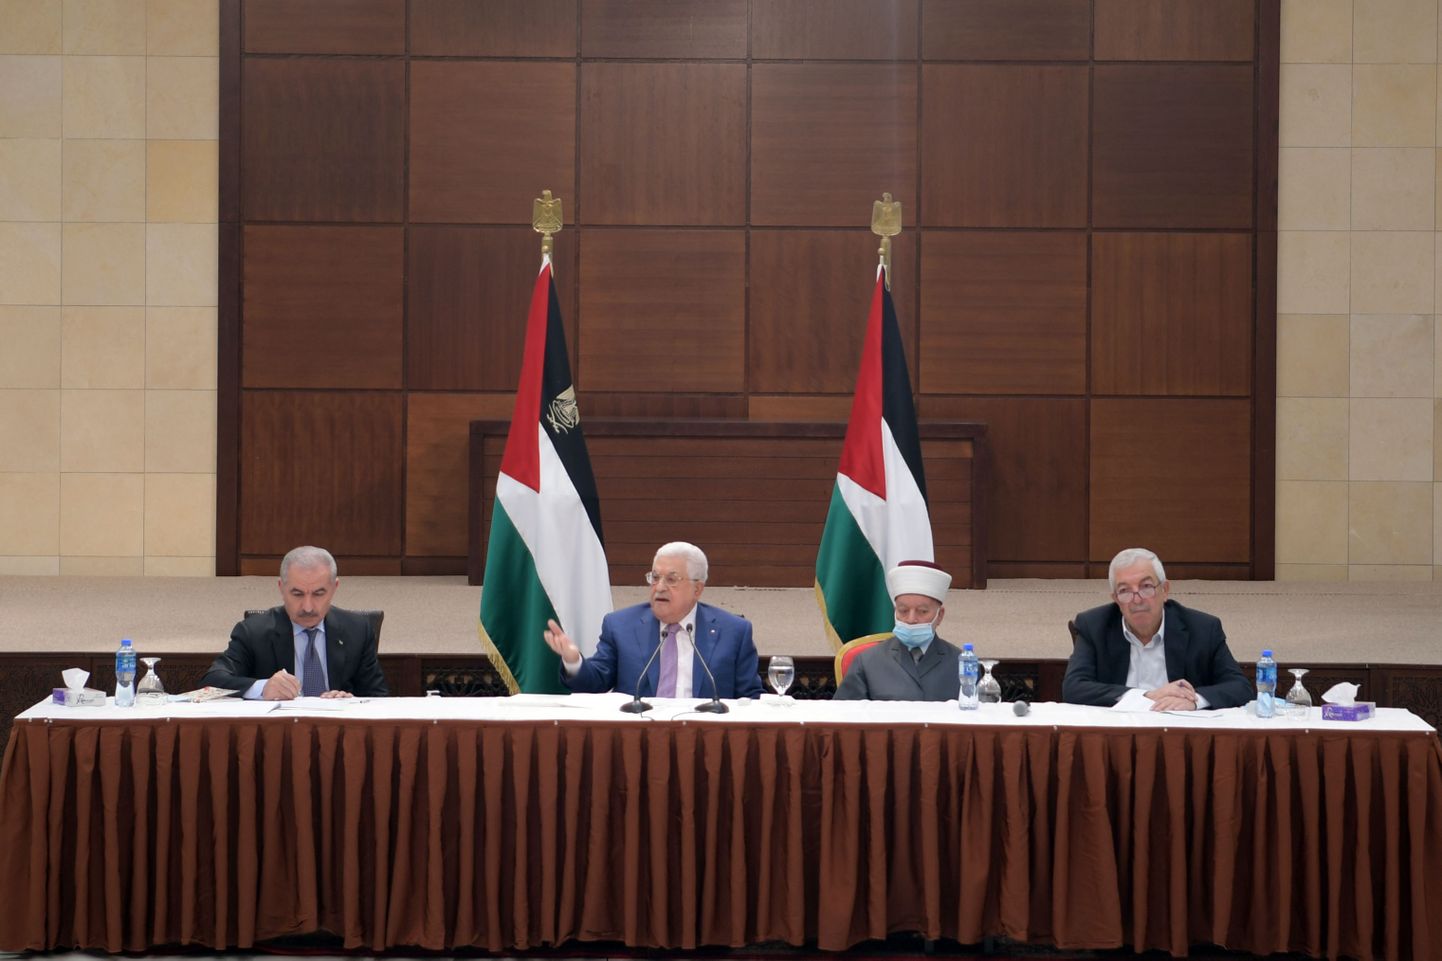 President Mahmoud Abbas Palestiina liidrite kohtumisel kõnelemas.